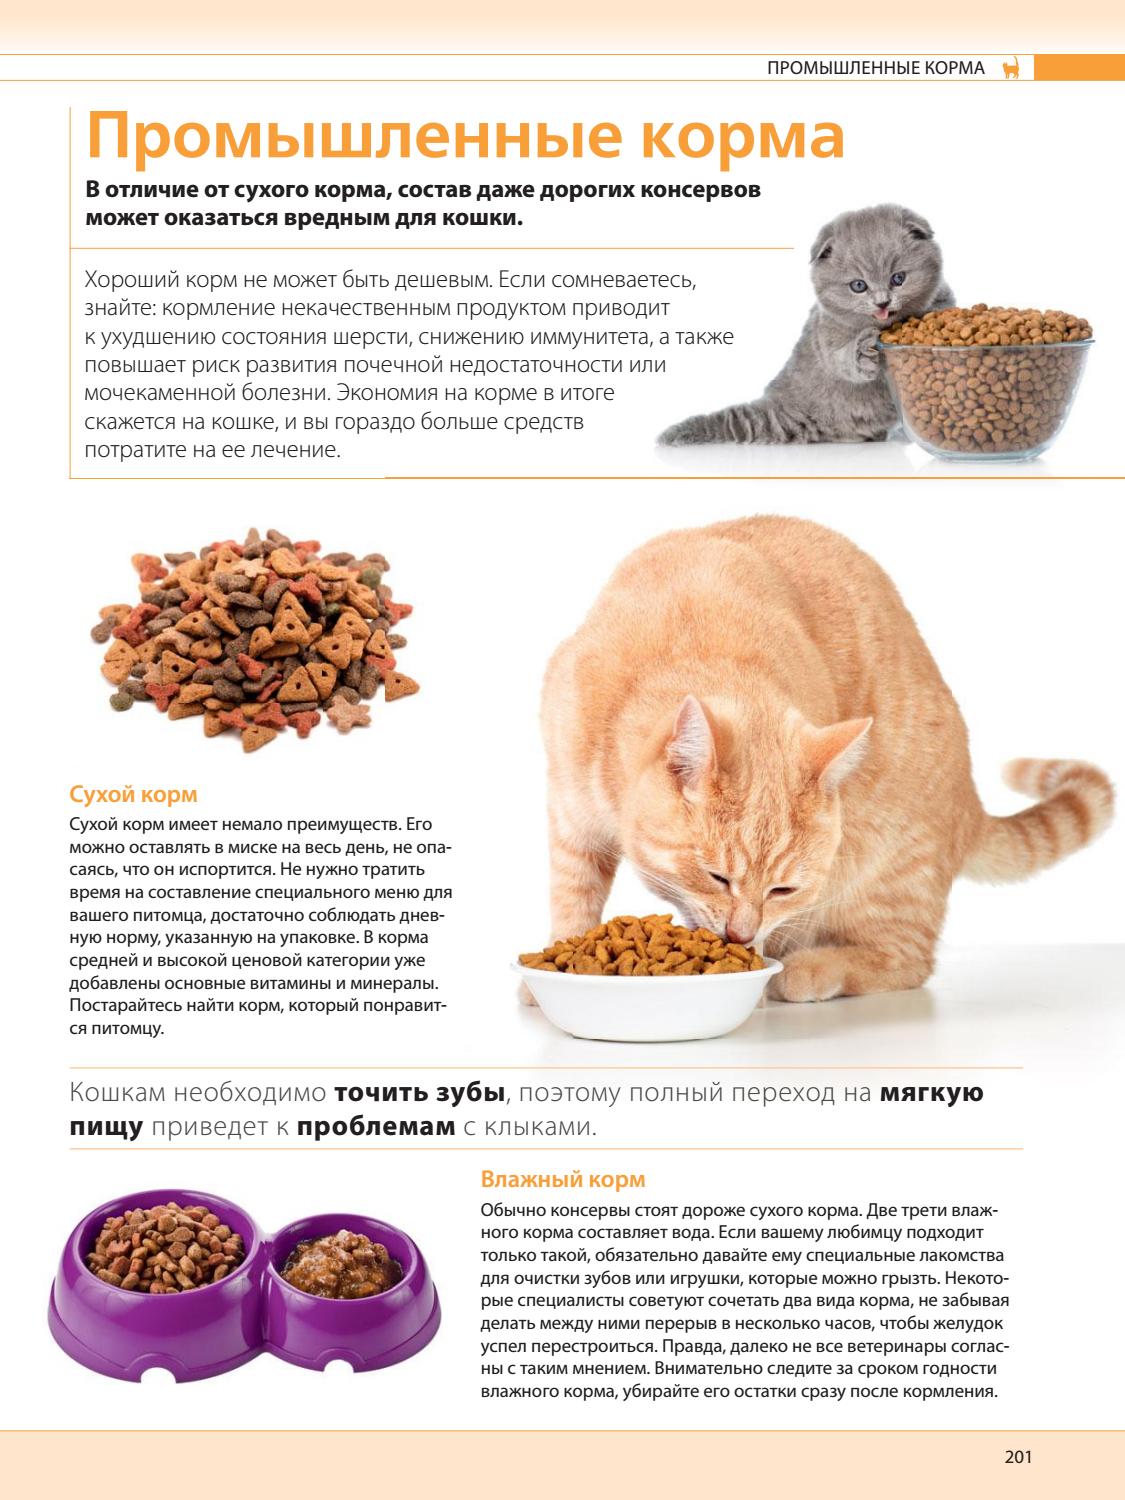 Как выкормить котенка без кошки в домашних условиях — средства и процесс